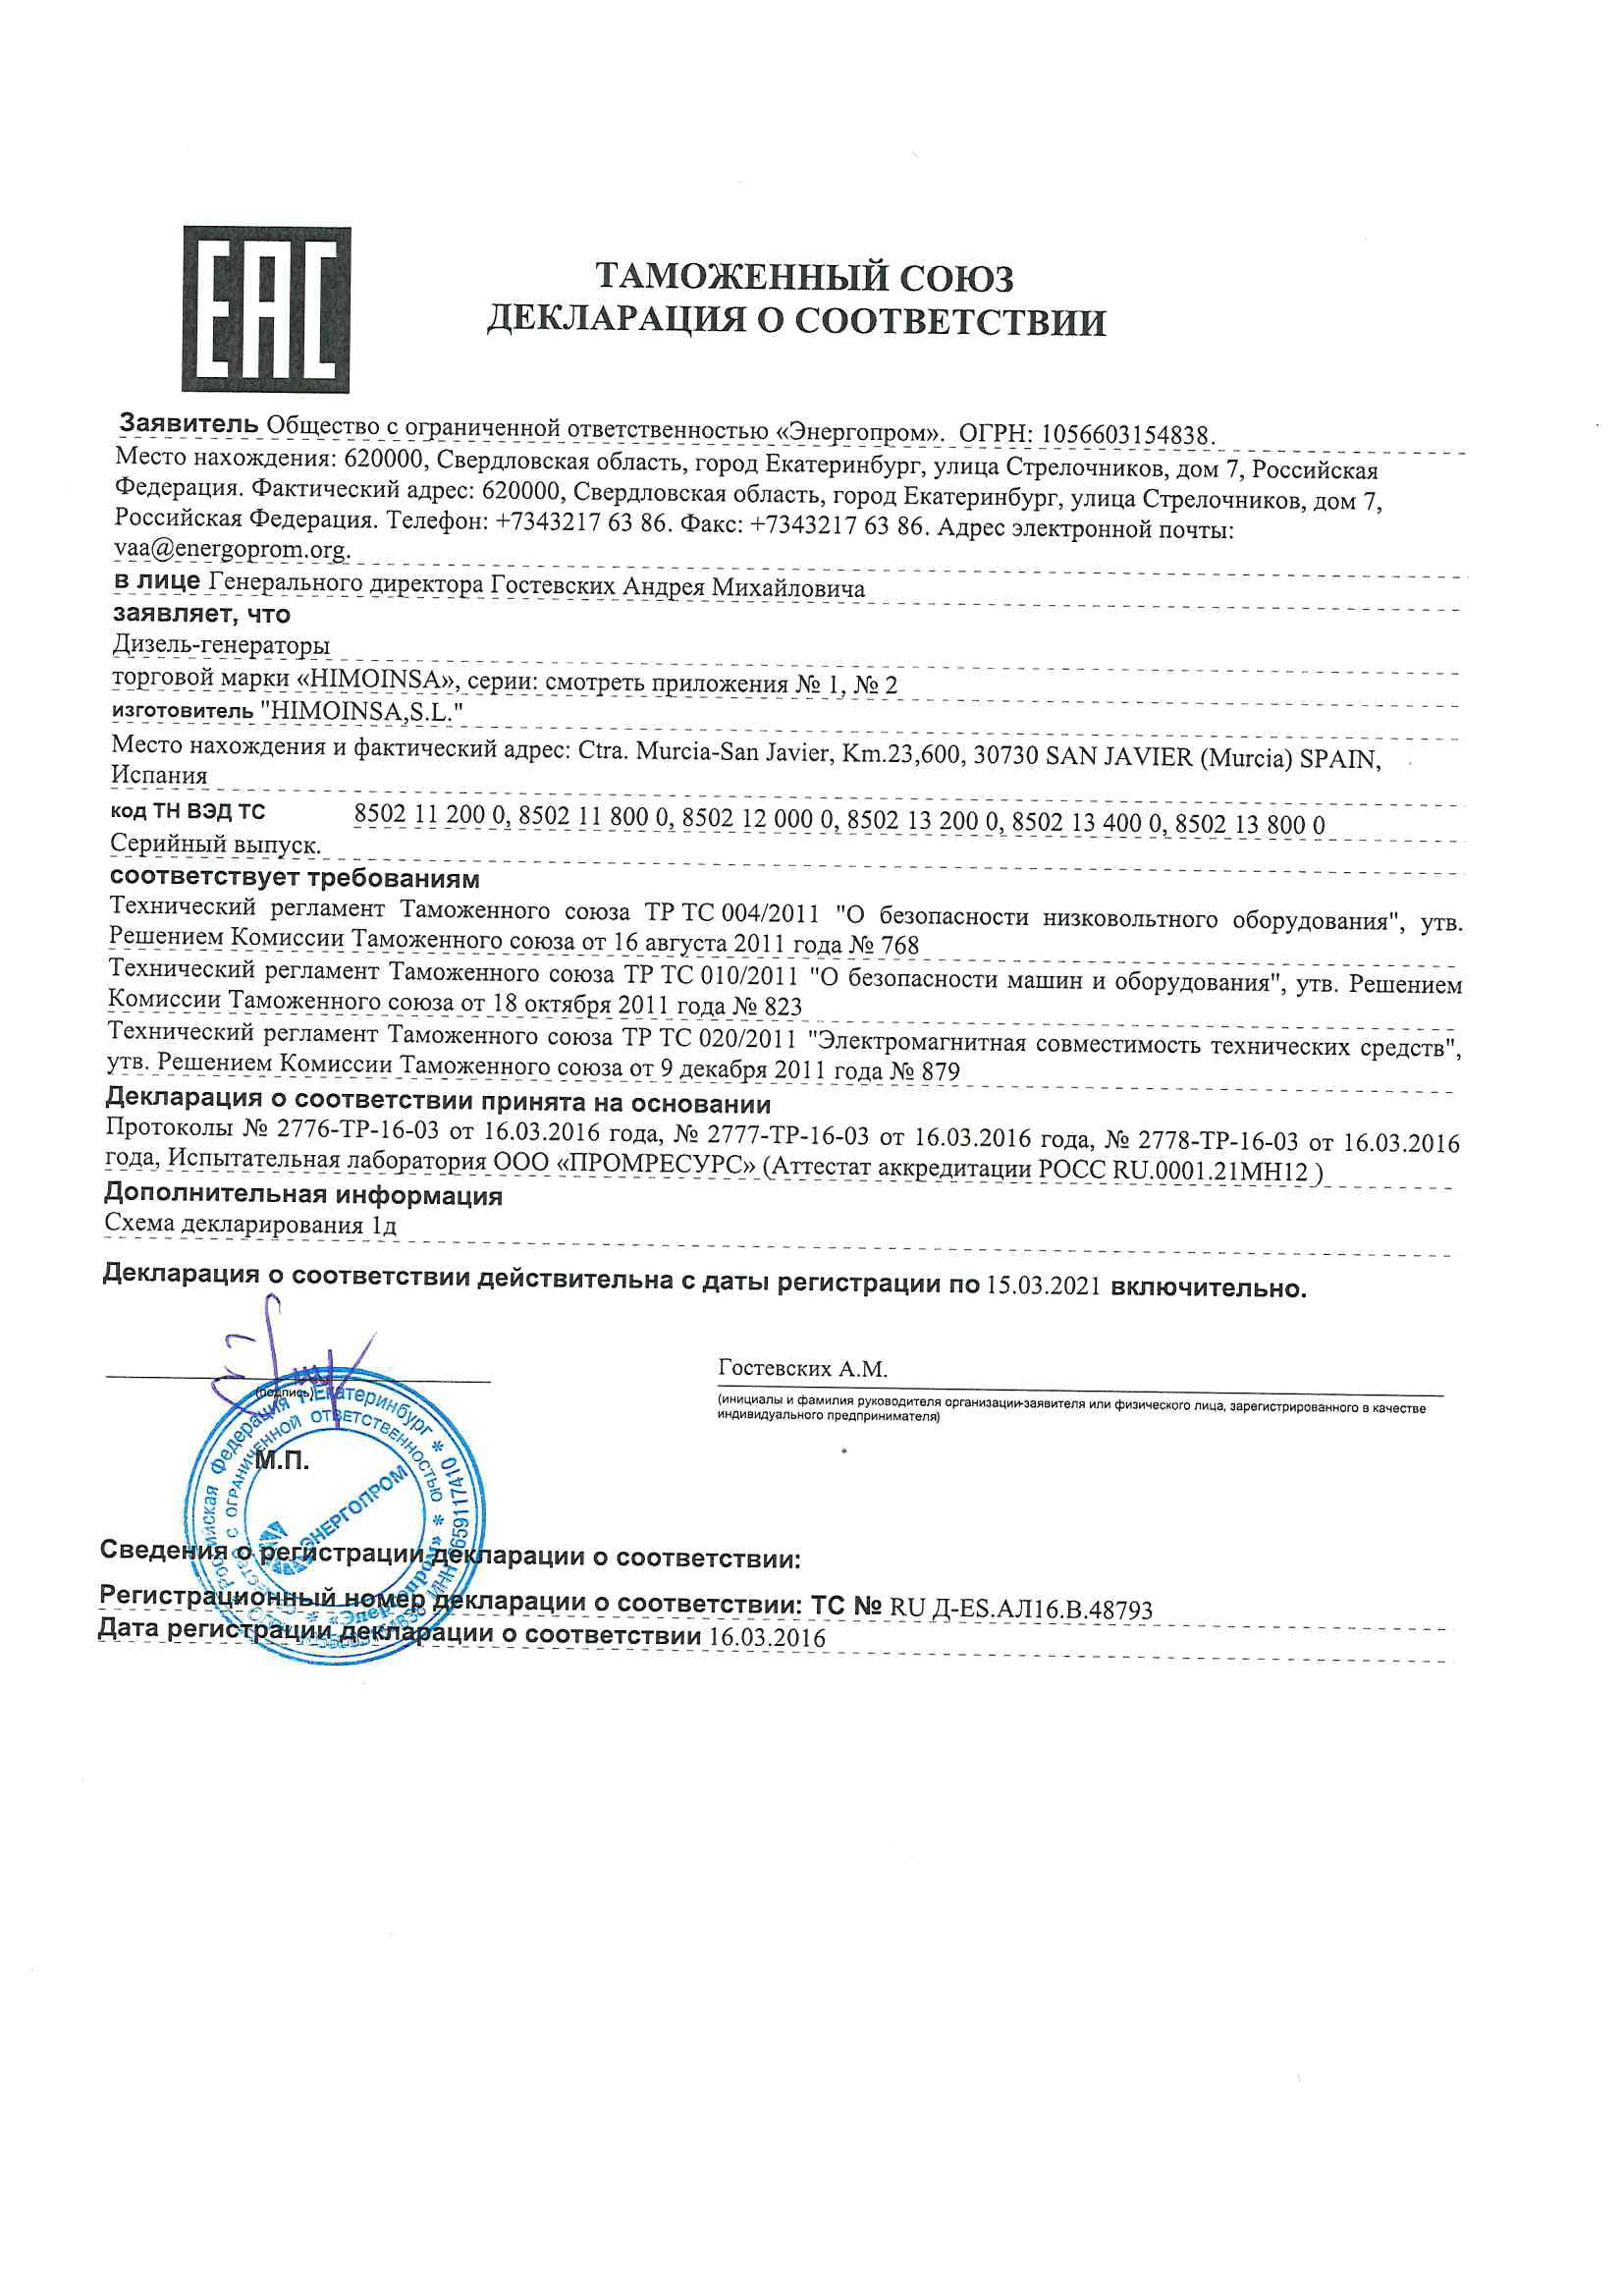 Декларация о соответствии техническому регламенту таможенного союза (дизель-генераторы торговой марки HIMOINSA)